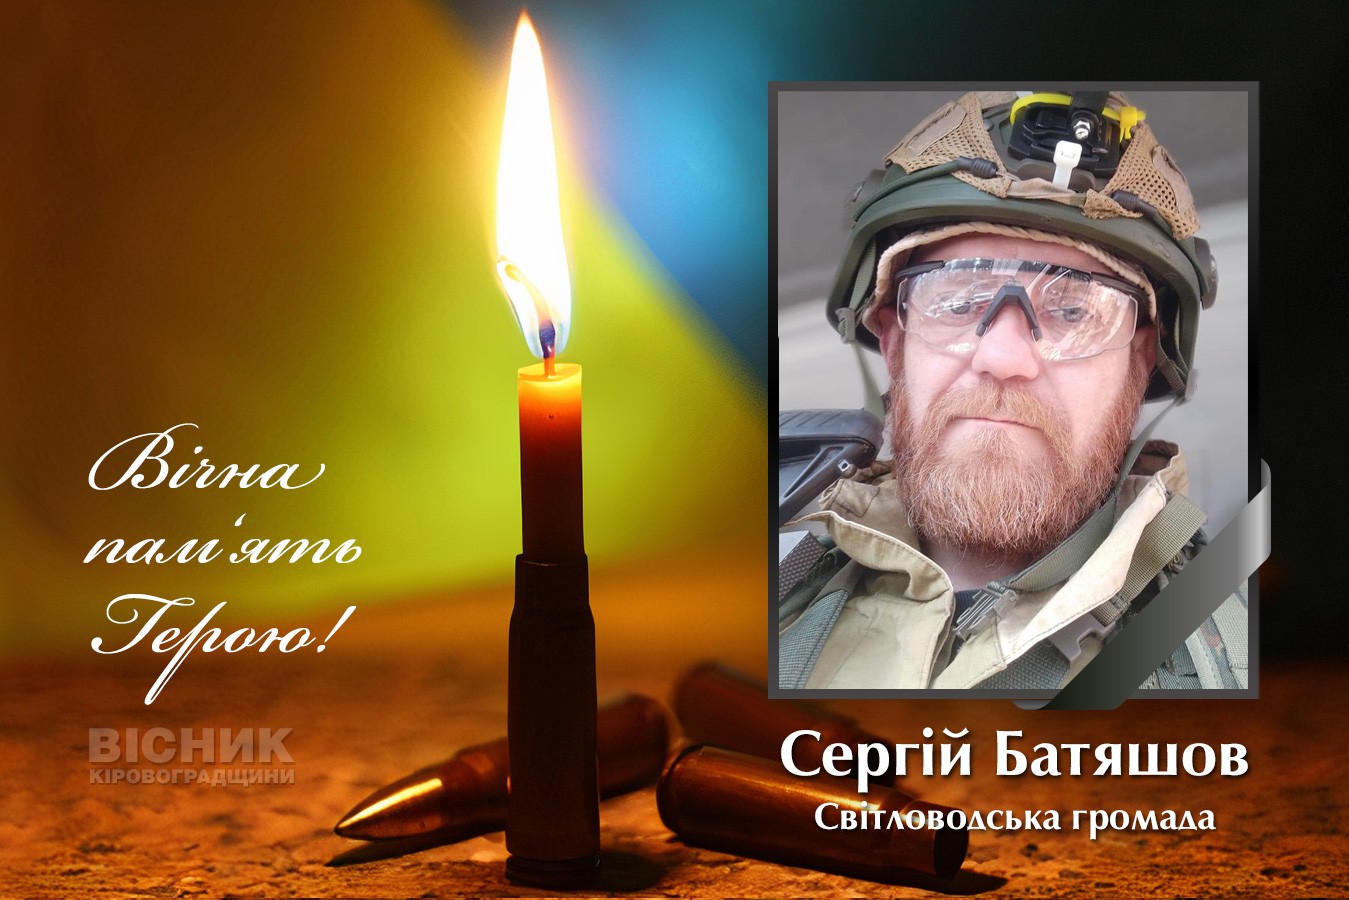 У бою за Україну загинув Сергій Батяшов 